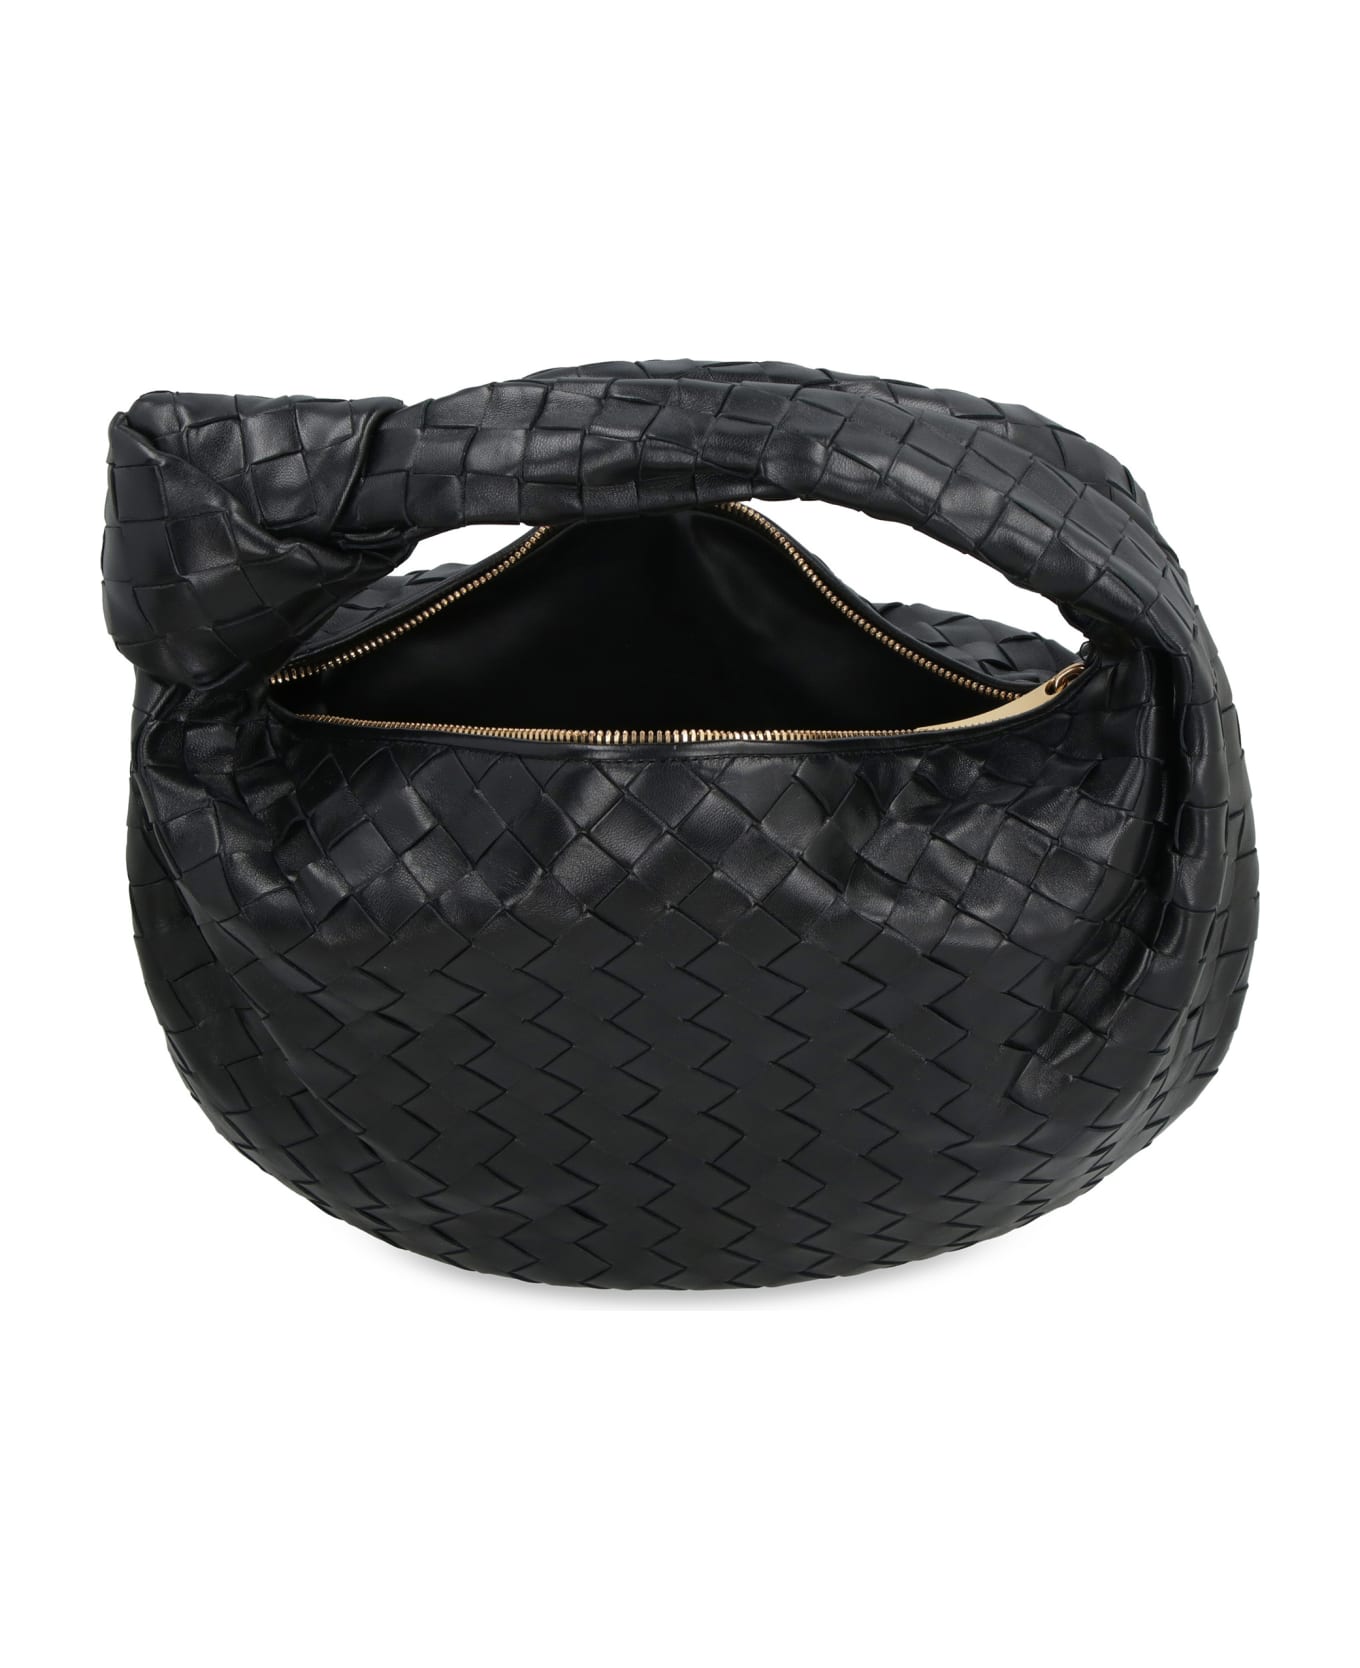 Bottega Veneta Jodie Leather Shoulder Bag - black トートバッグ